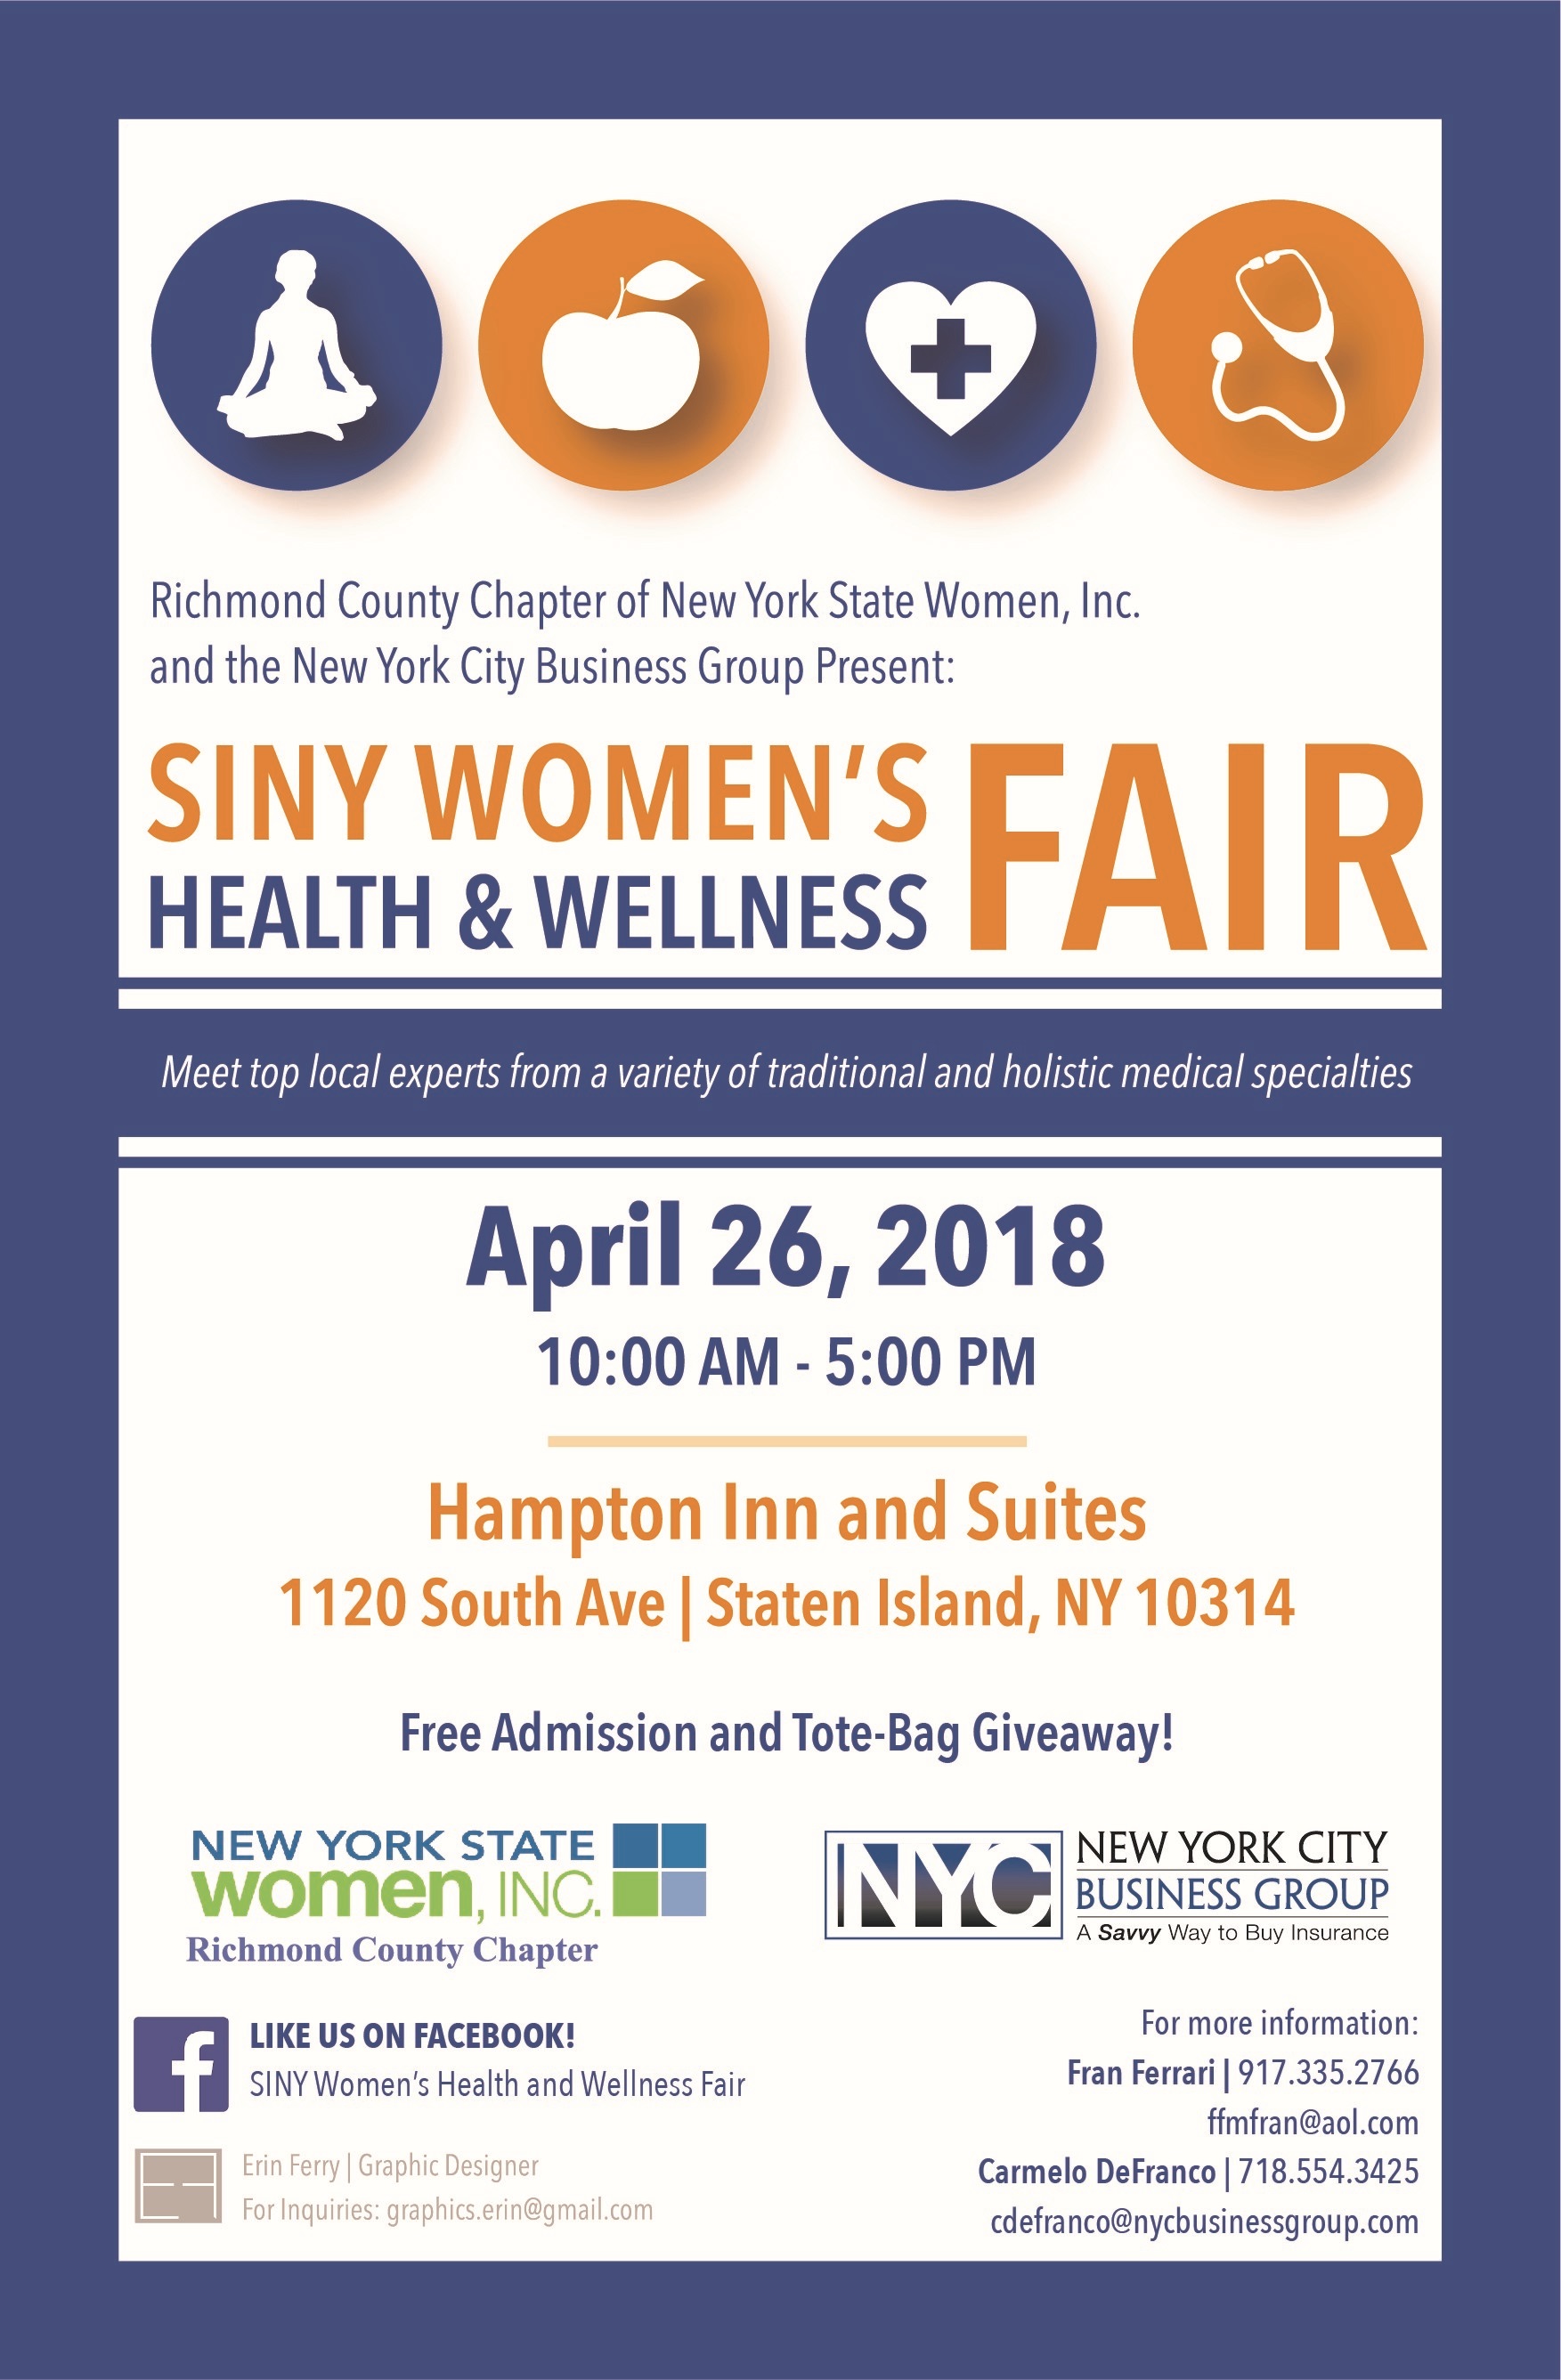 SINY Women’s Health & Wellness Fair